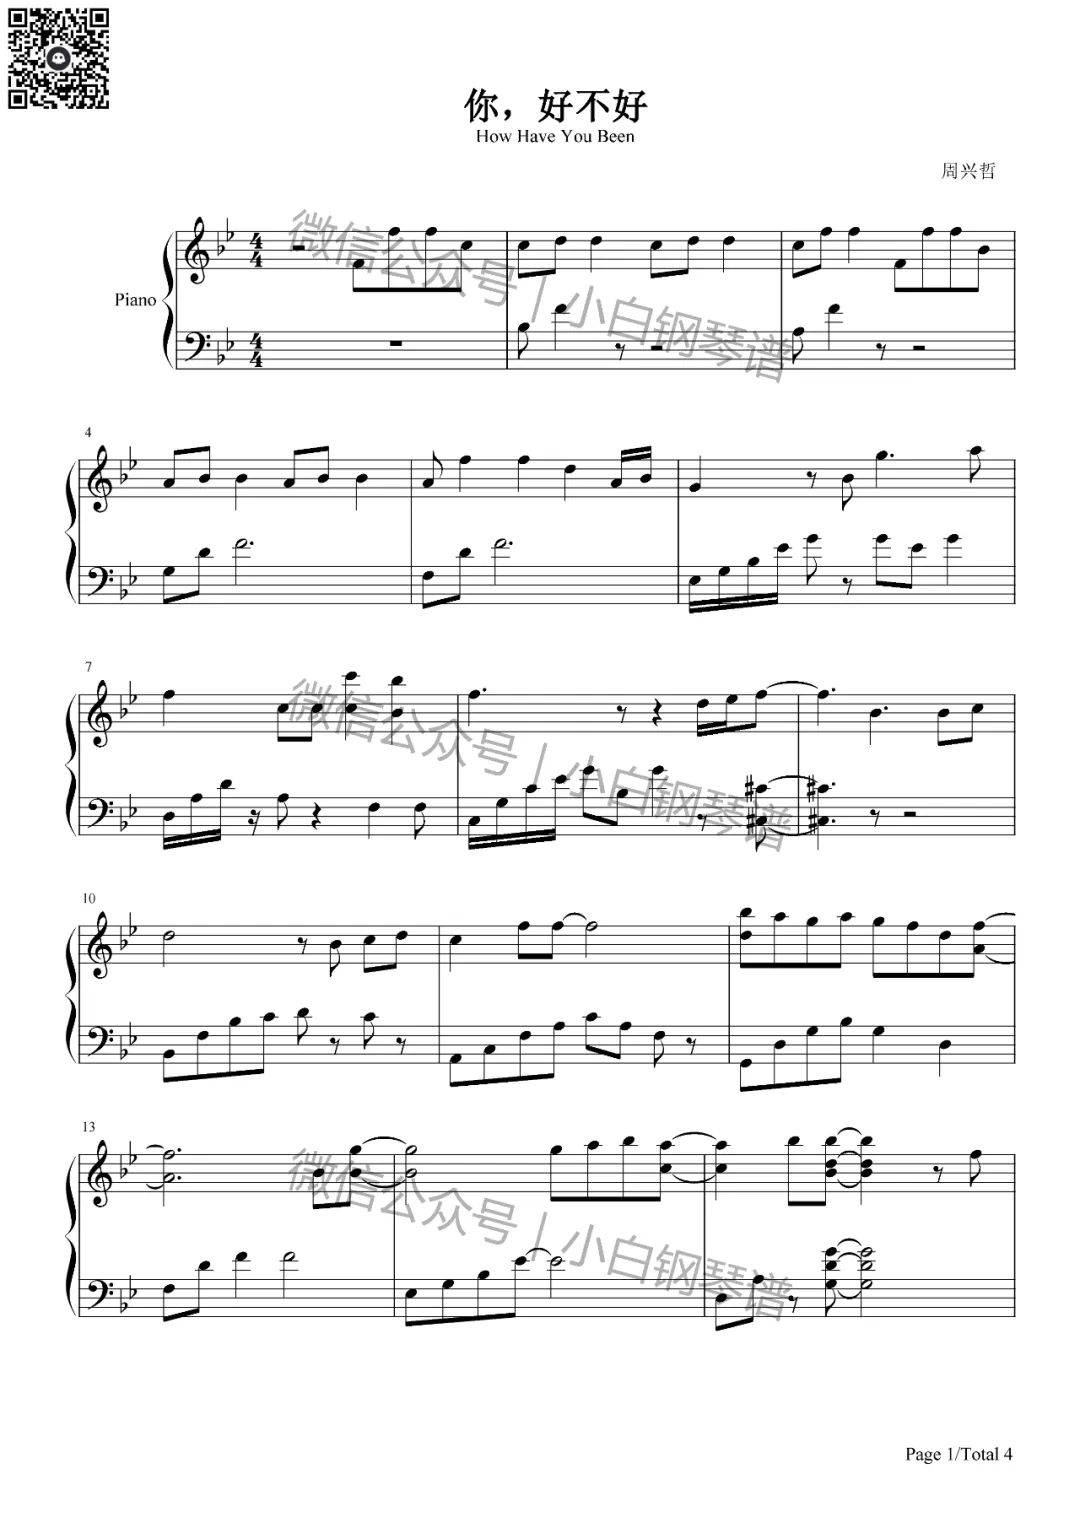 你好不好-遗憾拼图片尾曲双手简谱预览2-钢琴谱文件（五线谱、双手简谱、数字谱、Midi、PDF）免费下载